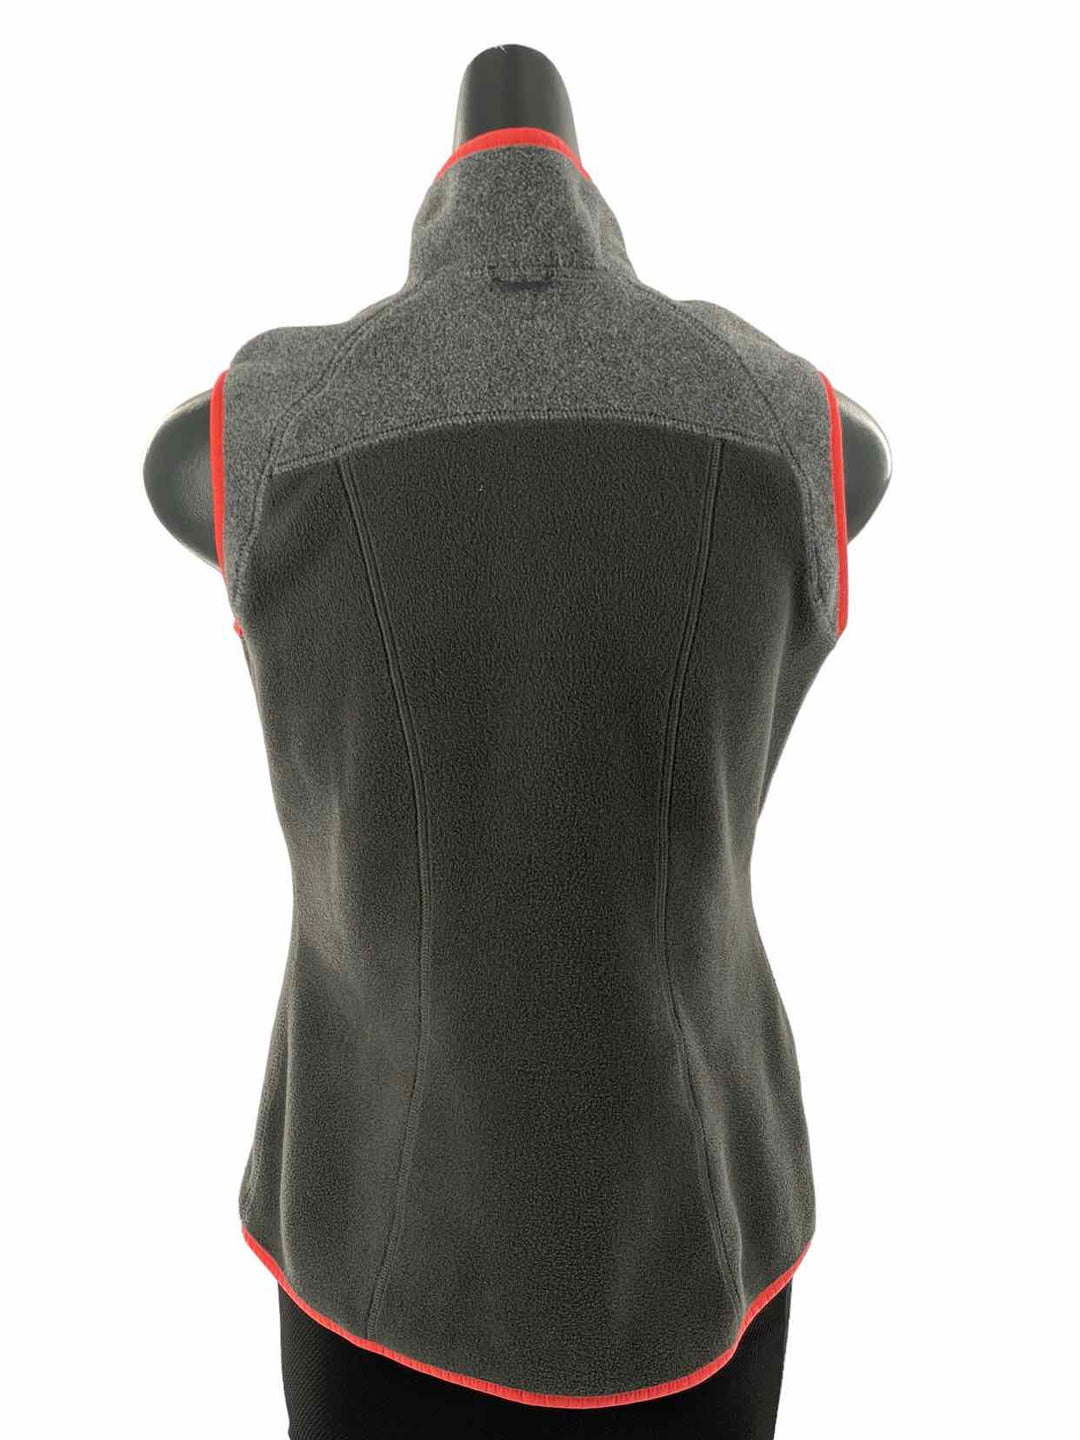 Eddie Bauer Size XS Gray Salmon Orange Vest (Outdoor)